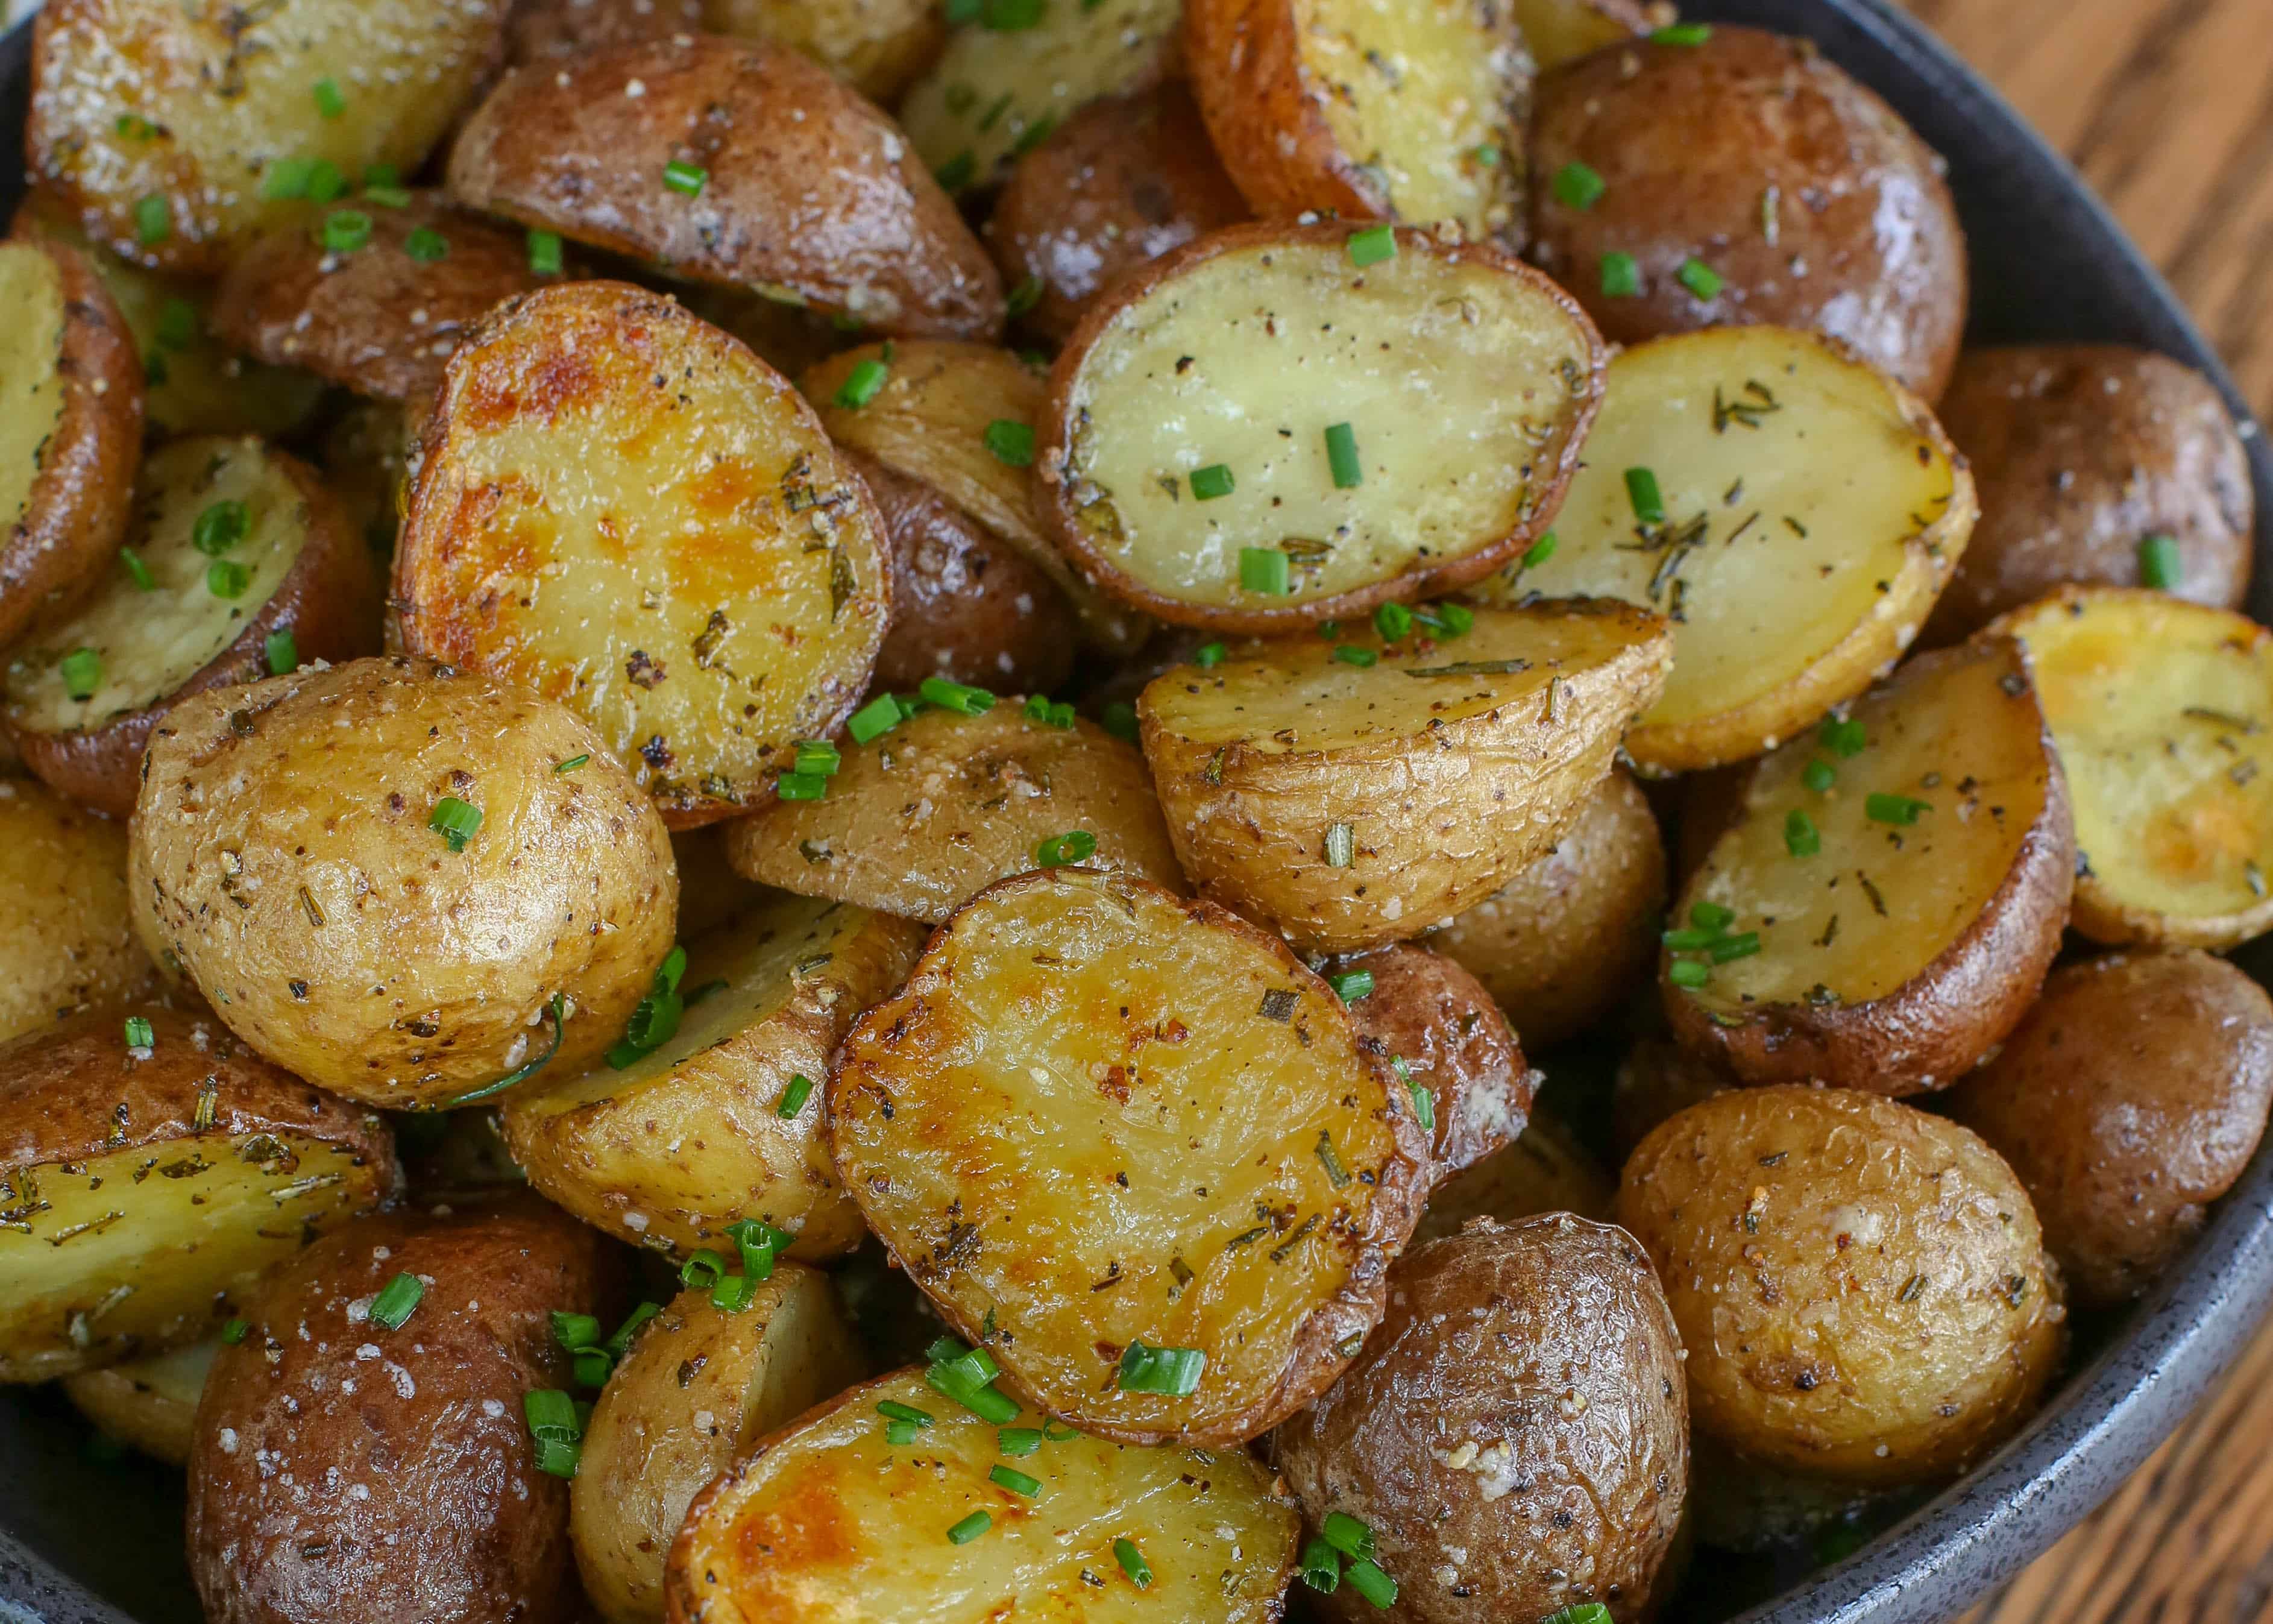 https://barefeetinthekitchen.com/wp-content/uploads/2013/10/Rosemary-Potatoes-2-1-of-1.jpg